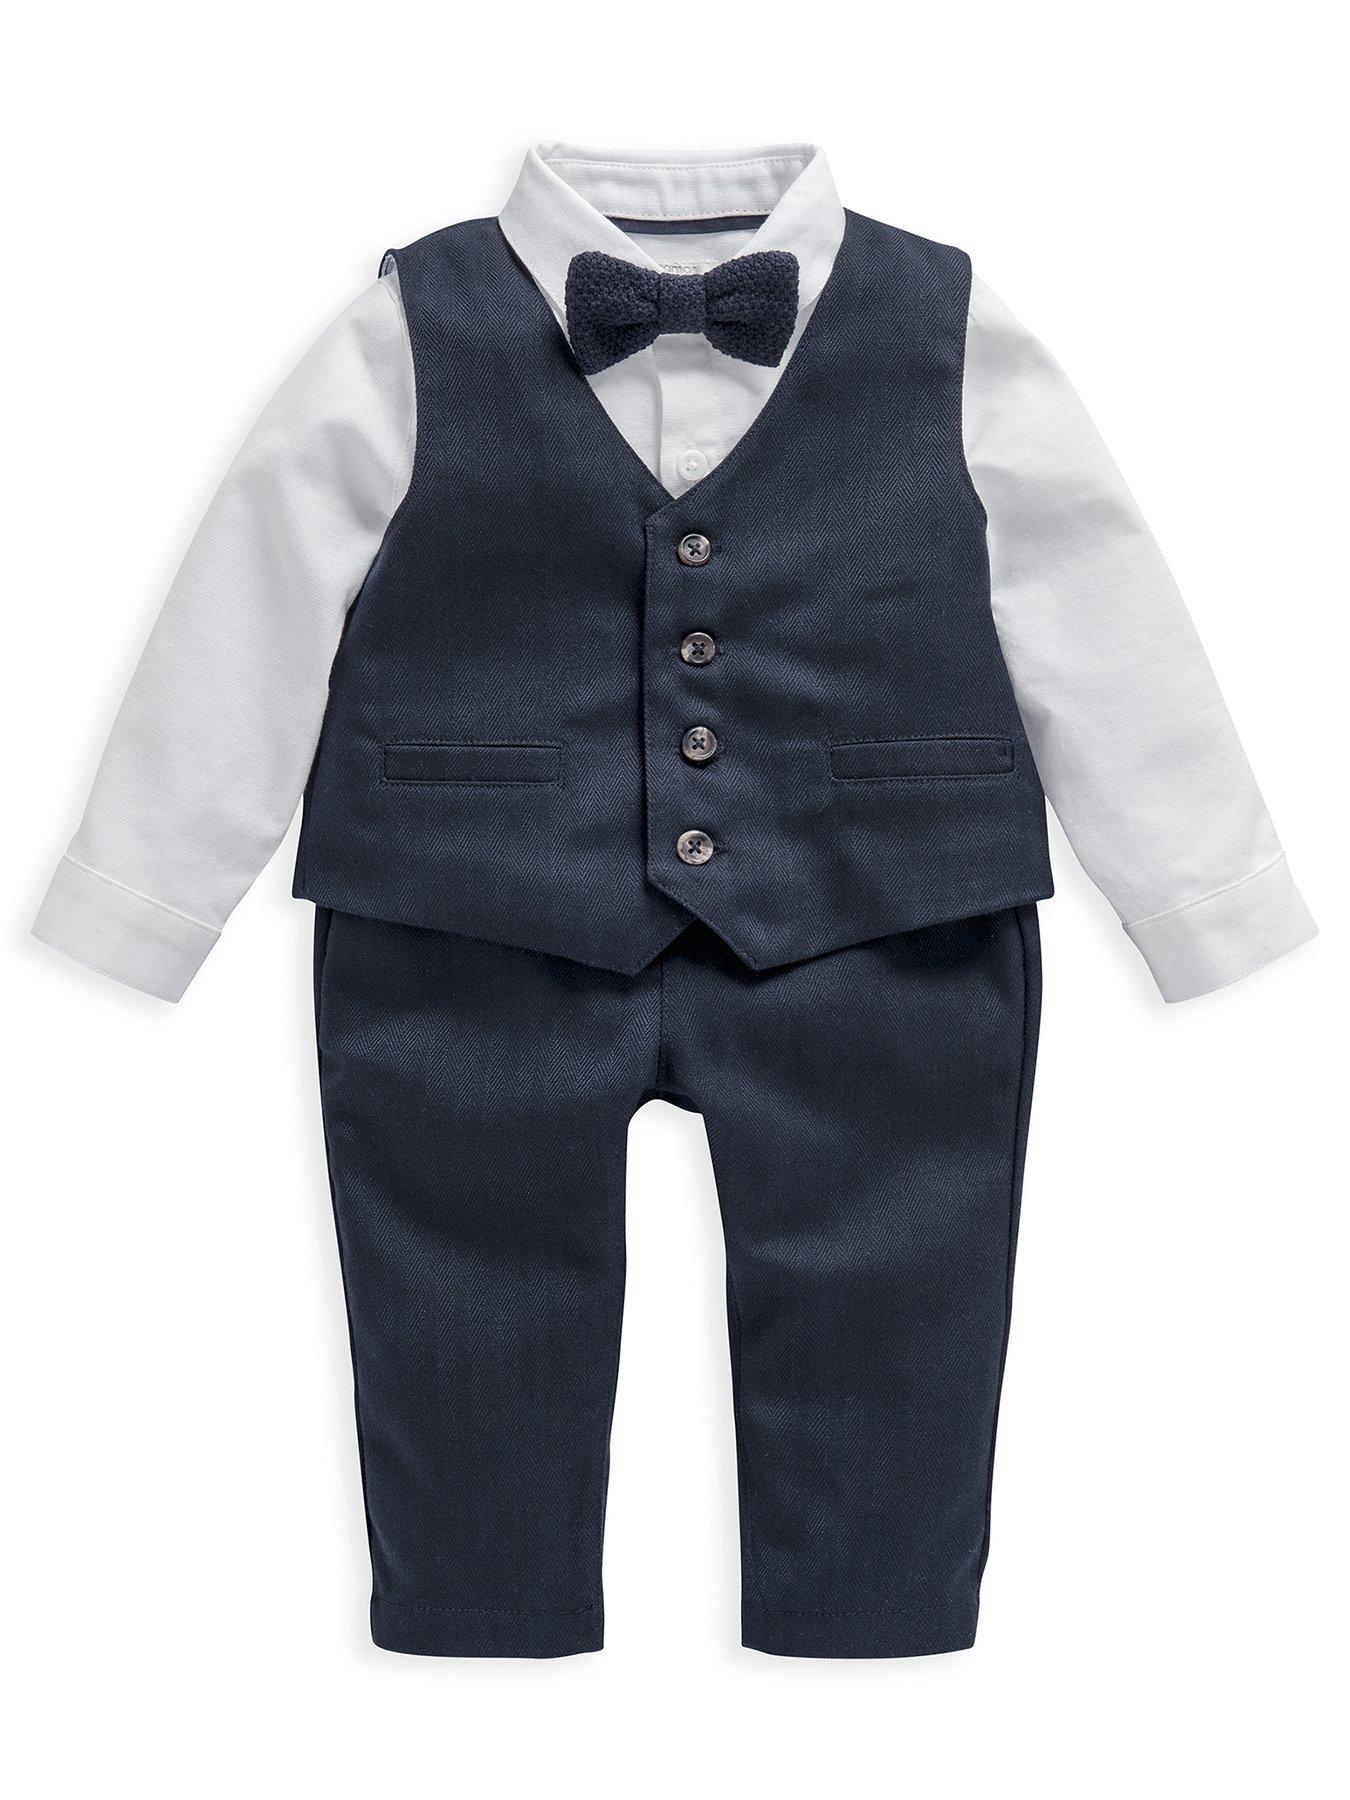 Occasion & wear Baby Boys 4 Piece Suit Set - Blue